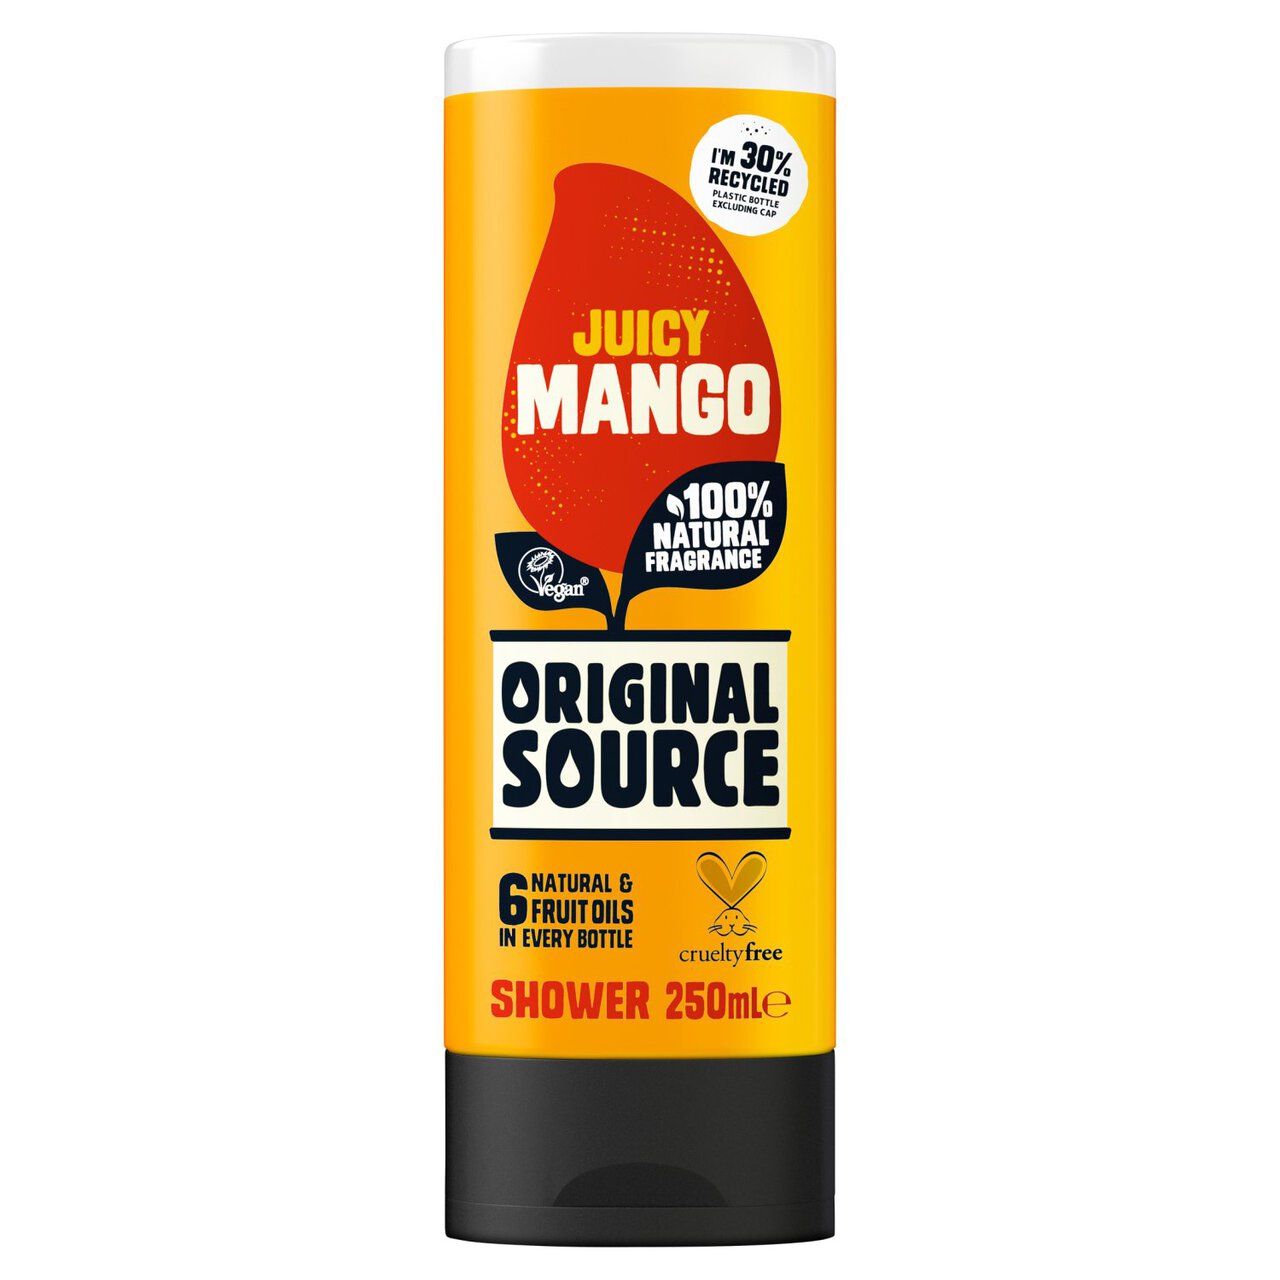 Original Source Shower Mango Shower Gel 250ml